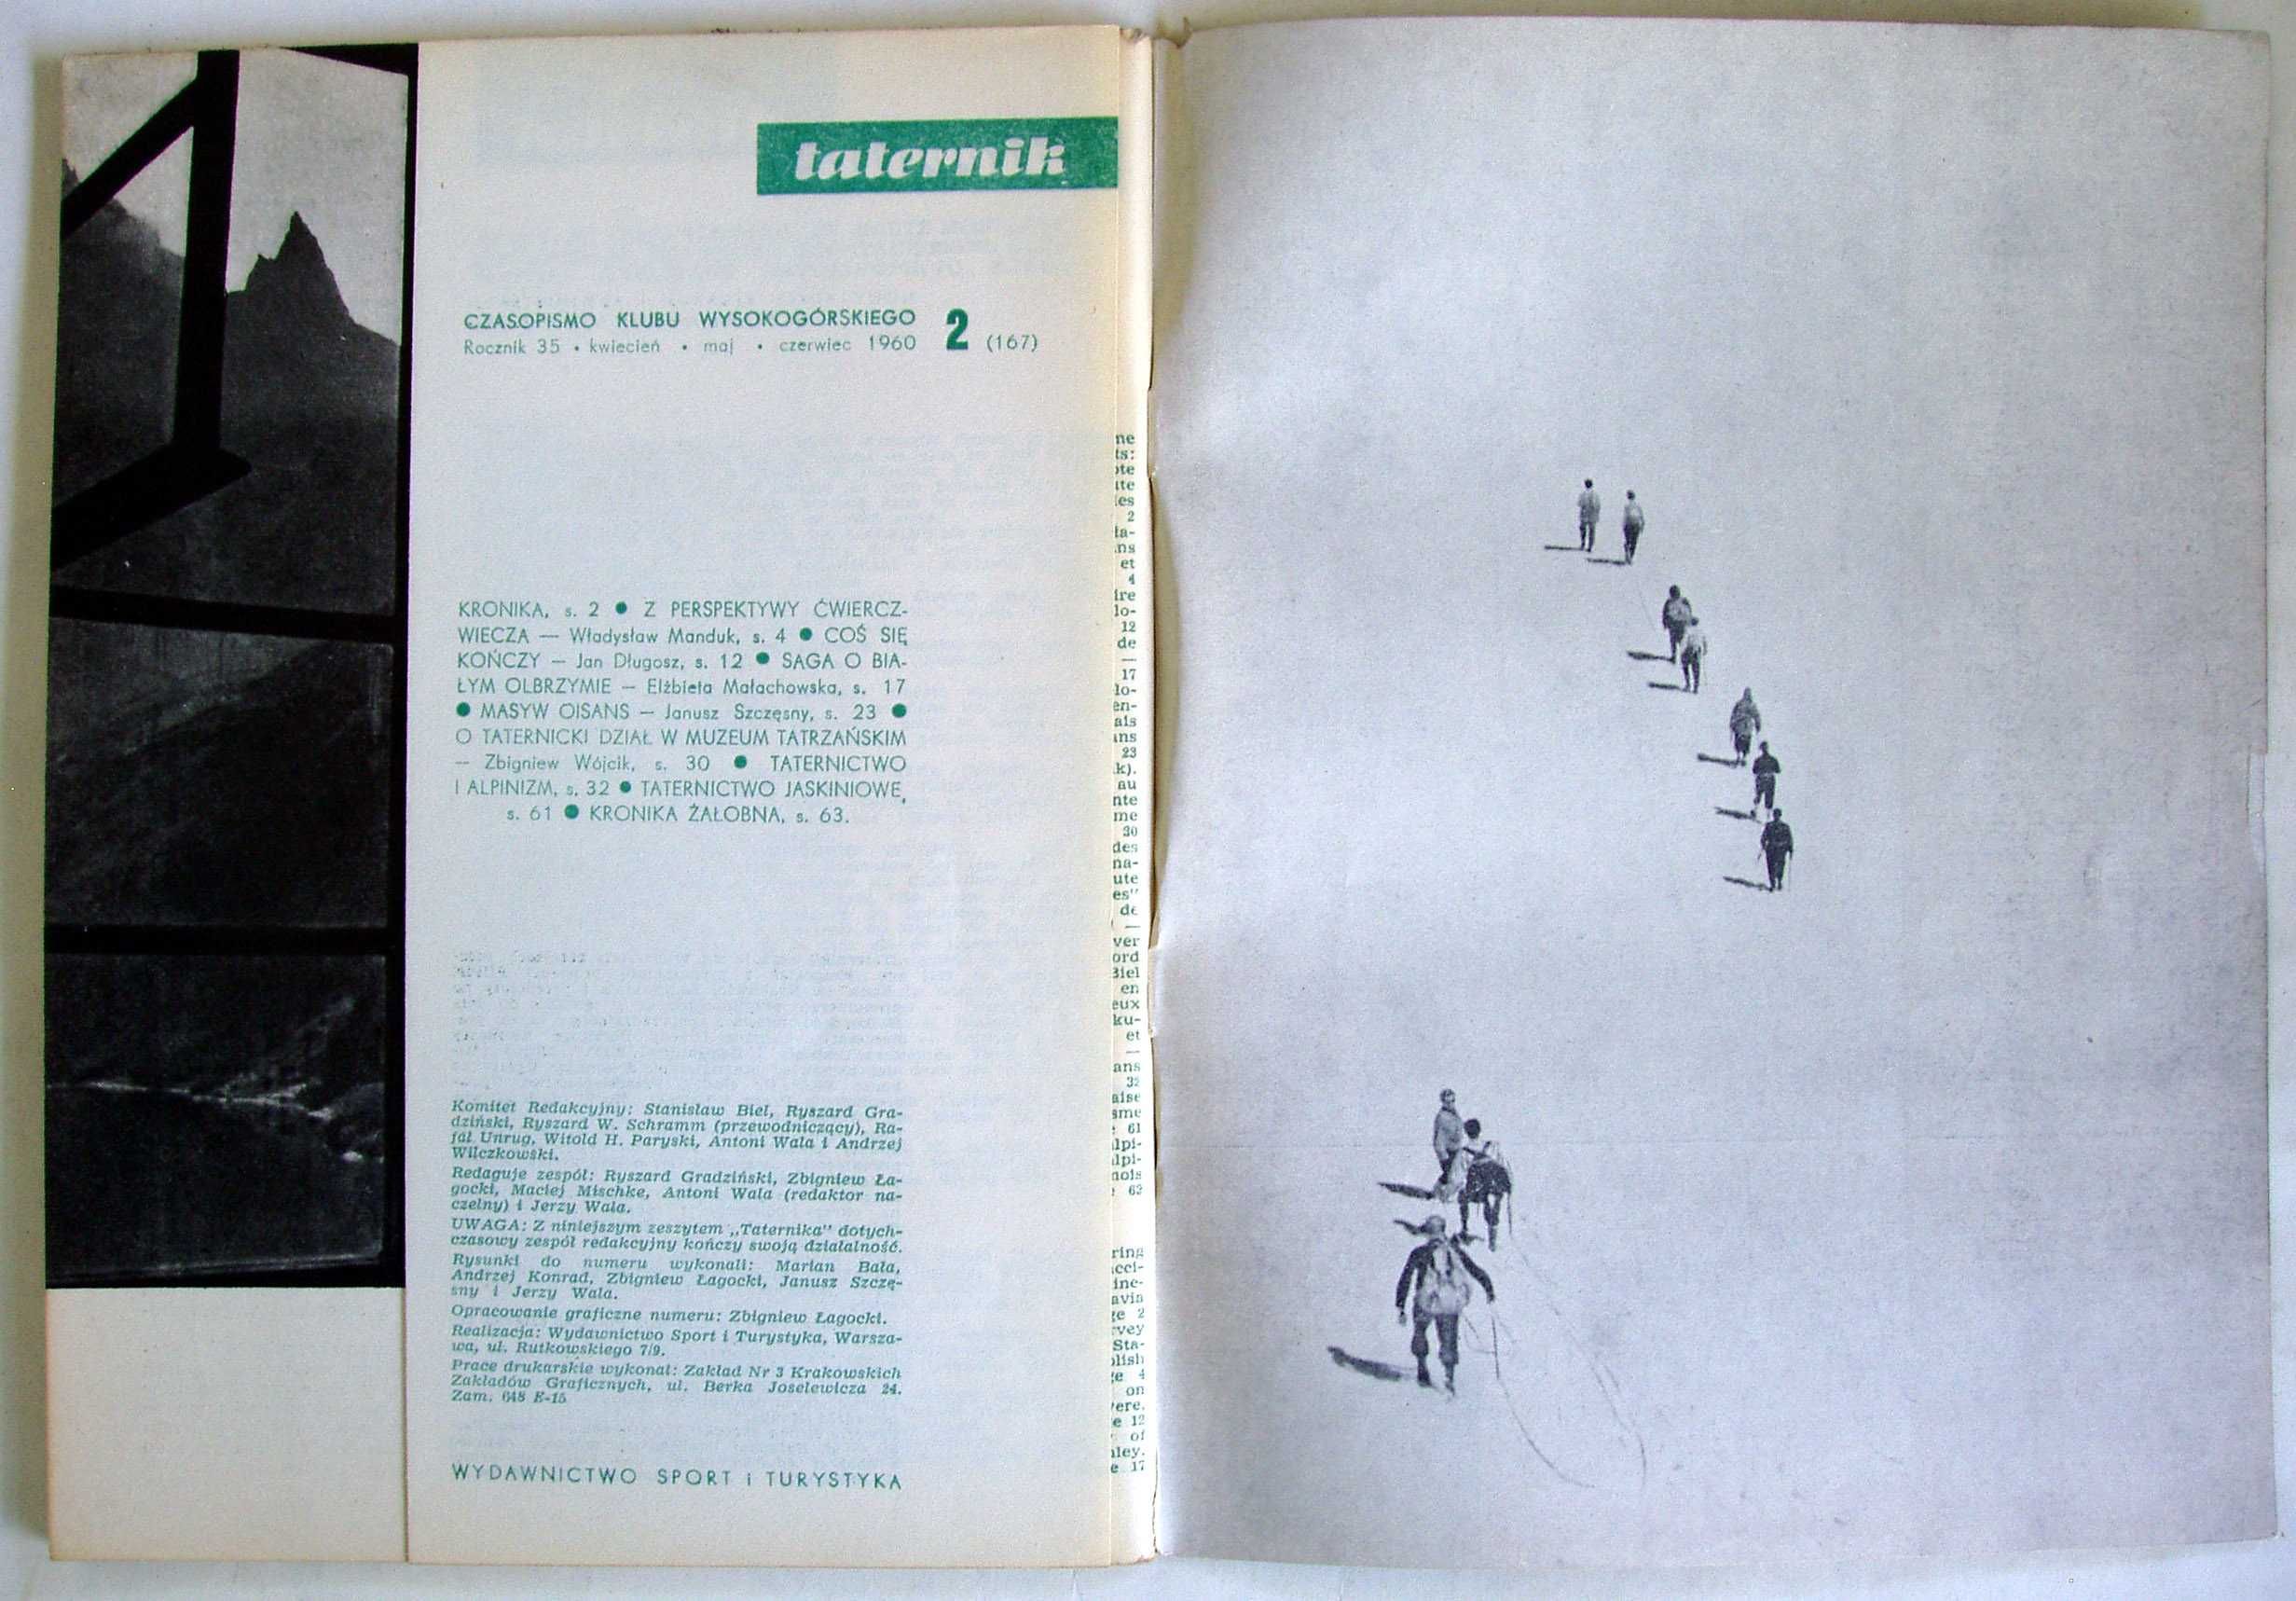 Taternik. Rocznik XXXVI. Nr 1, 2, 3-4. Rok 1960